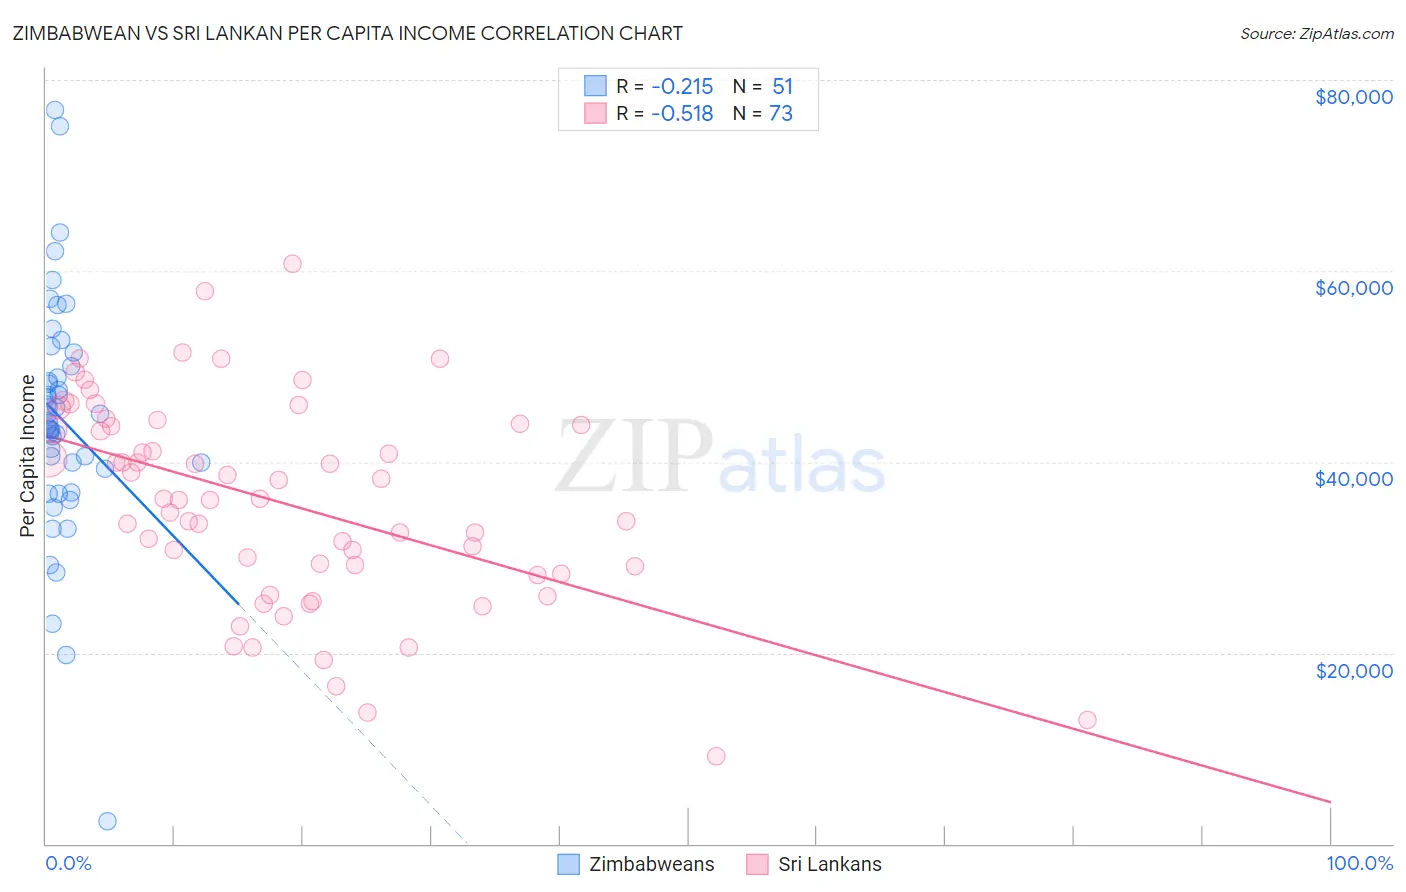 Zimbabwean vs Sri Lankan Per Capita Income